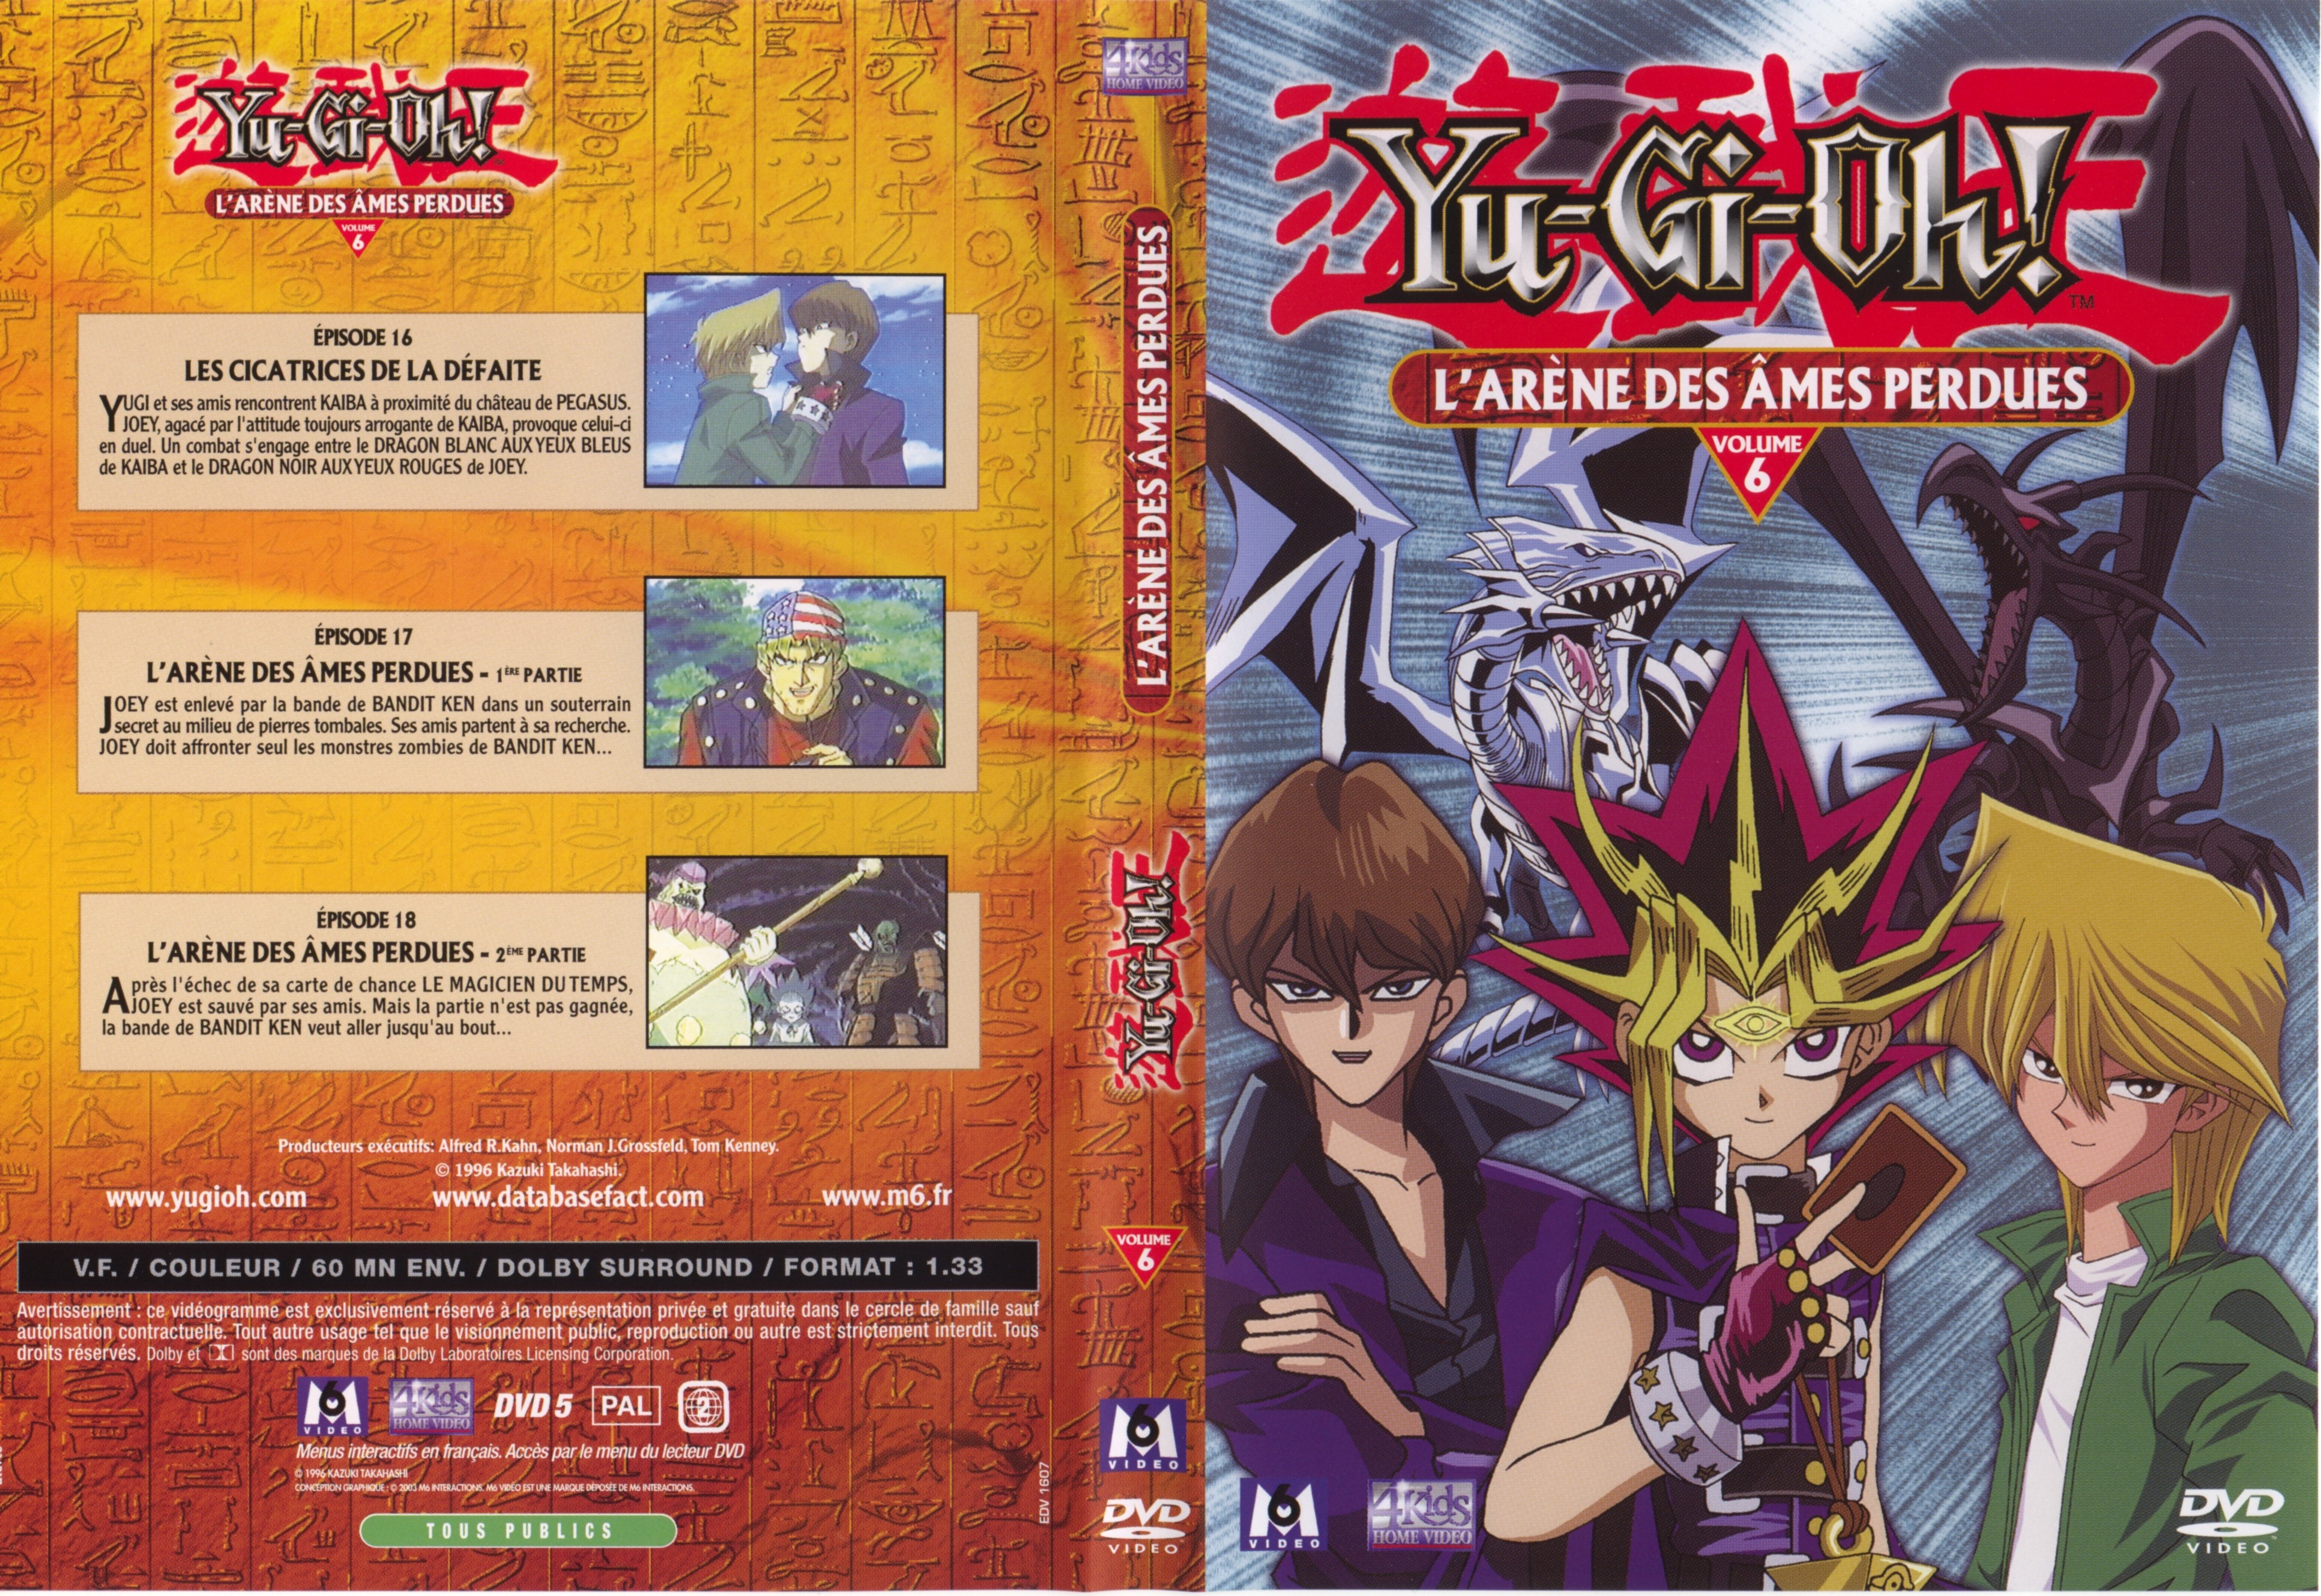 Jaquette DVD Yu-gi-oh! vol 06